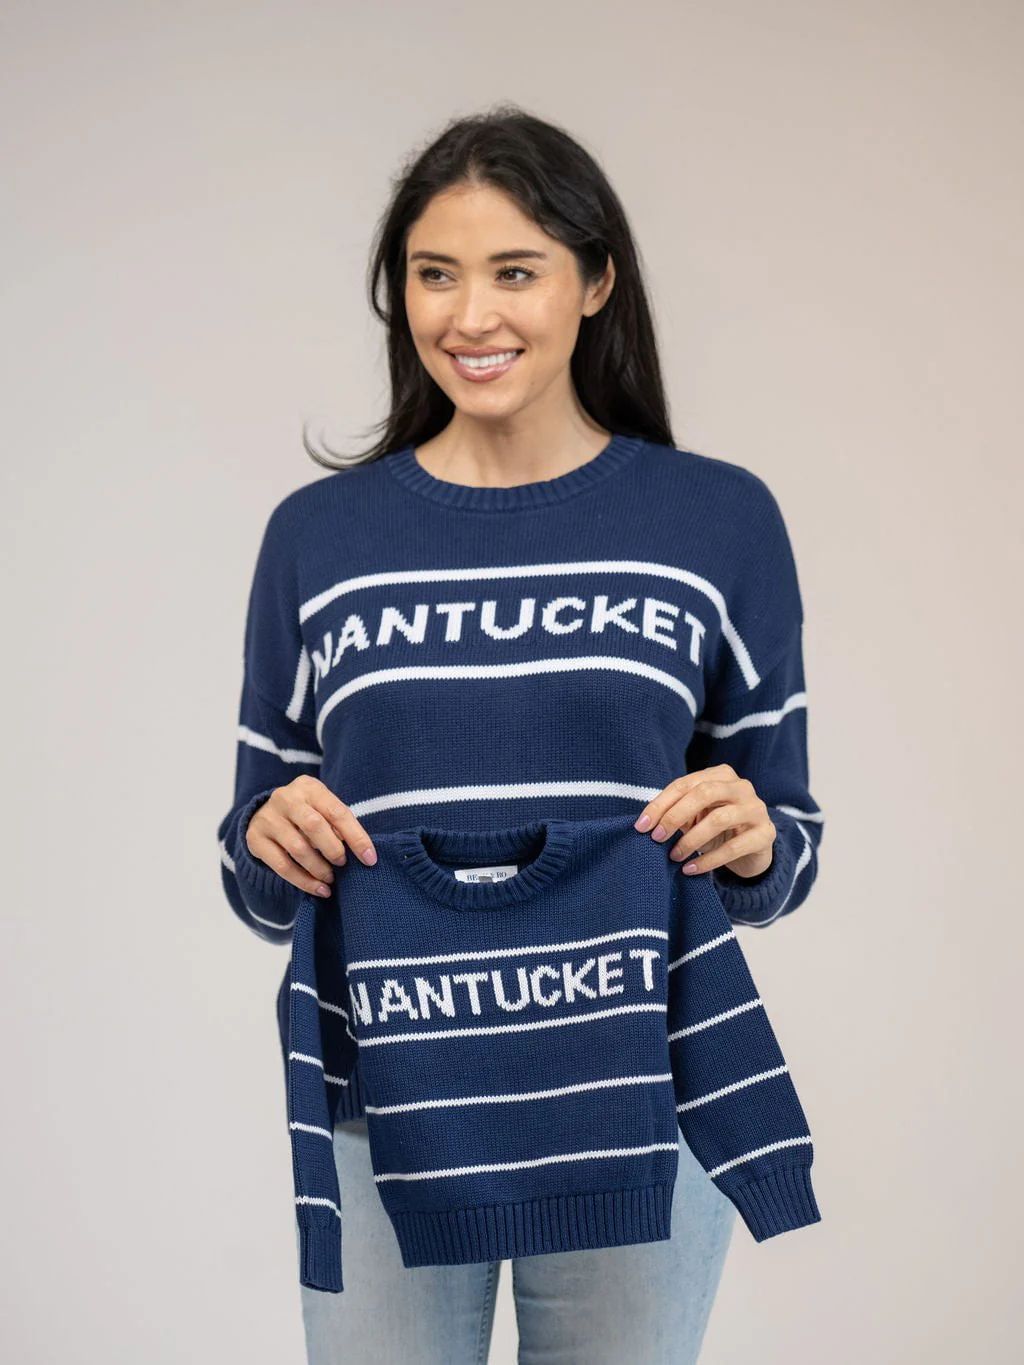 Kids Nantucket Sweater in Navy Stripe | Beau & Ro